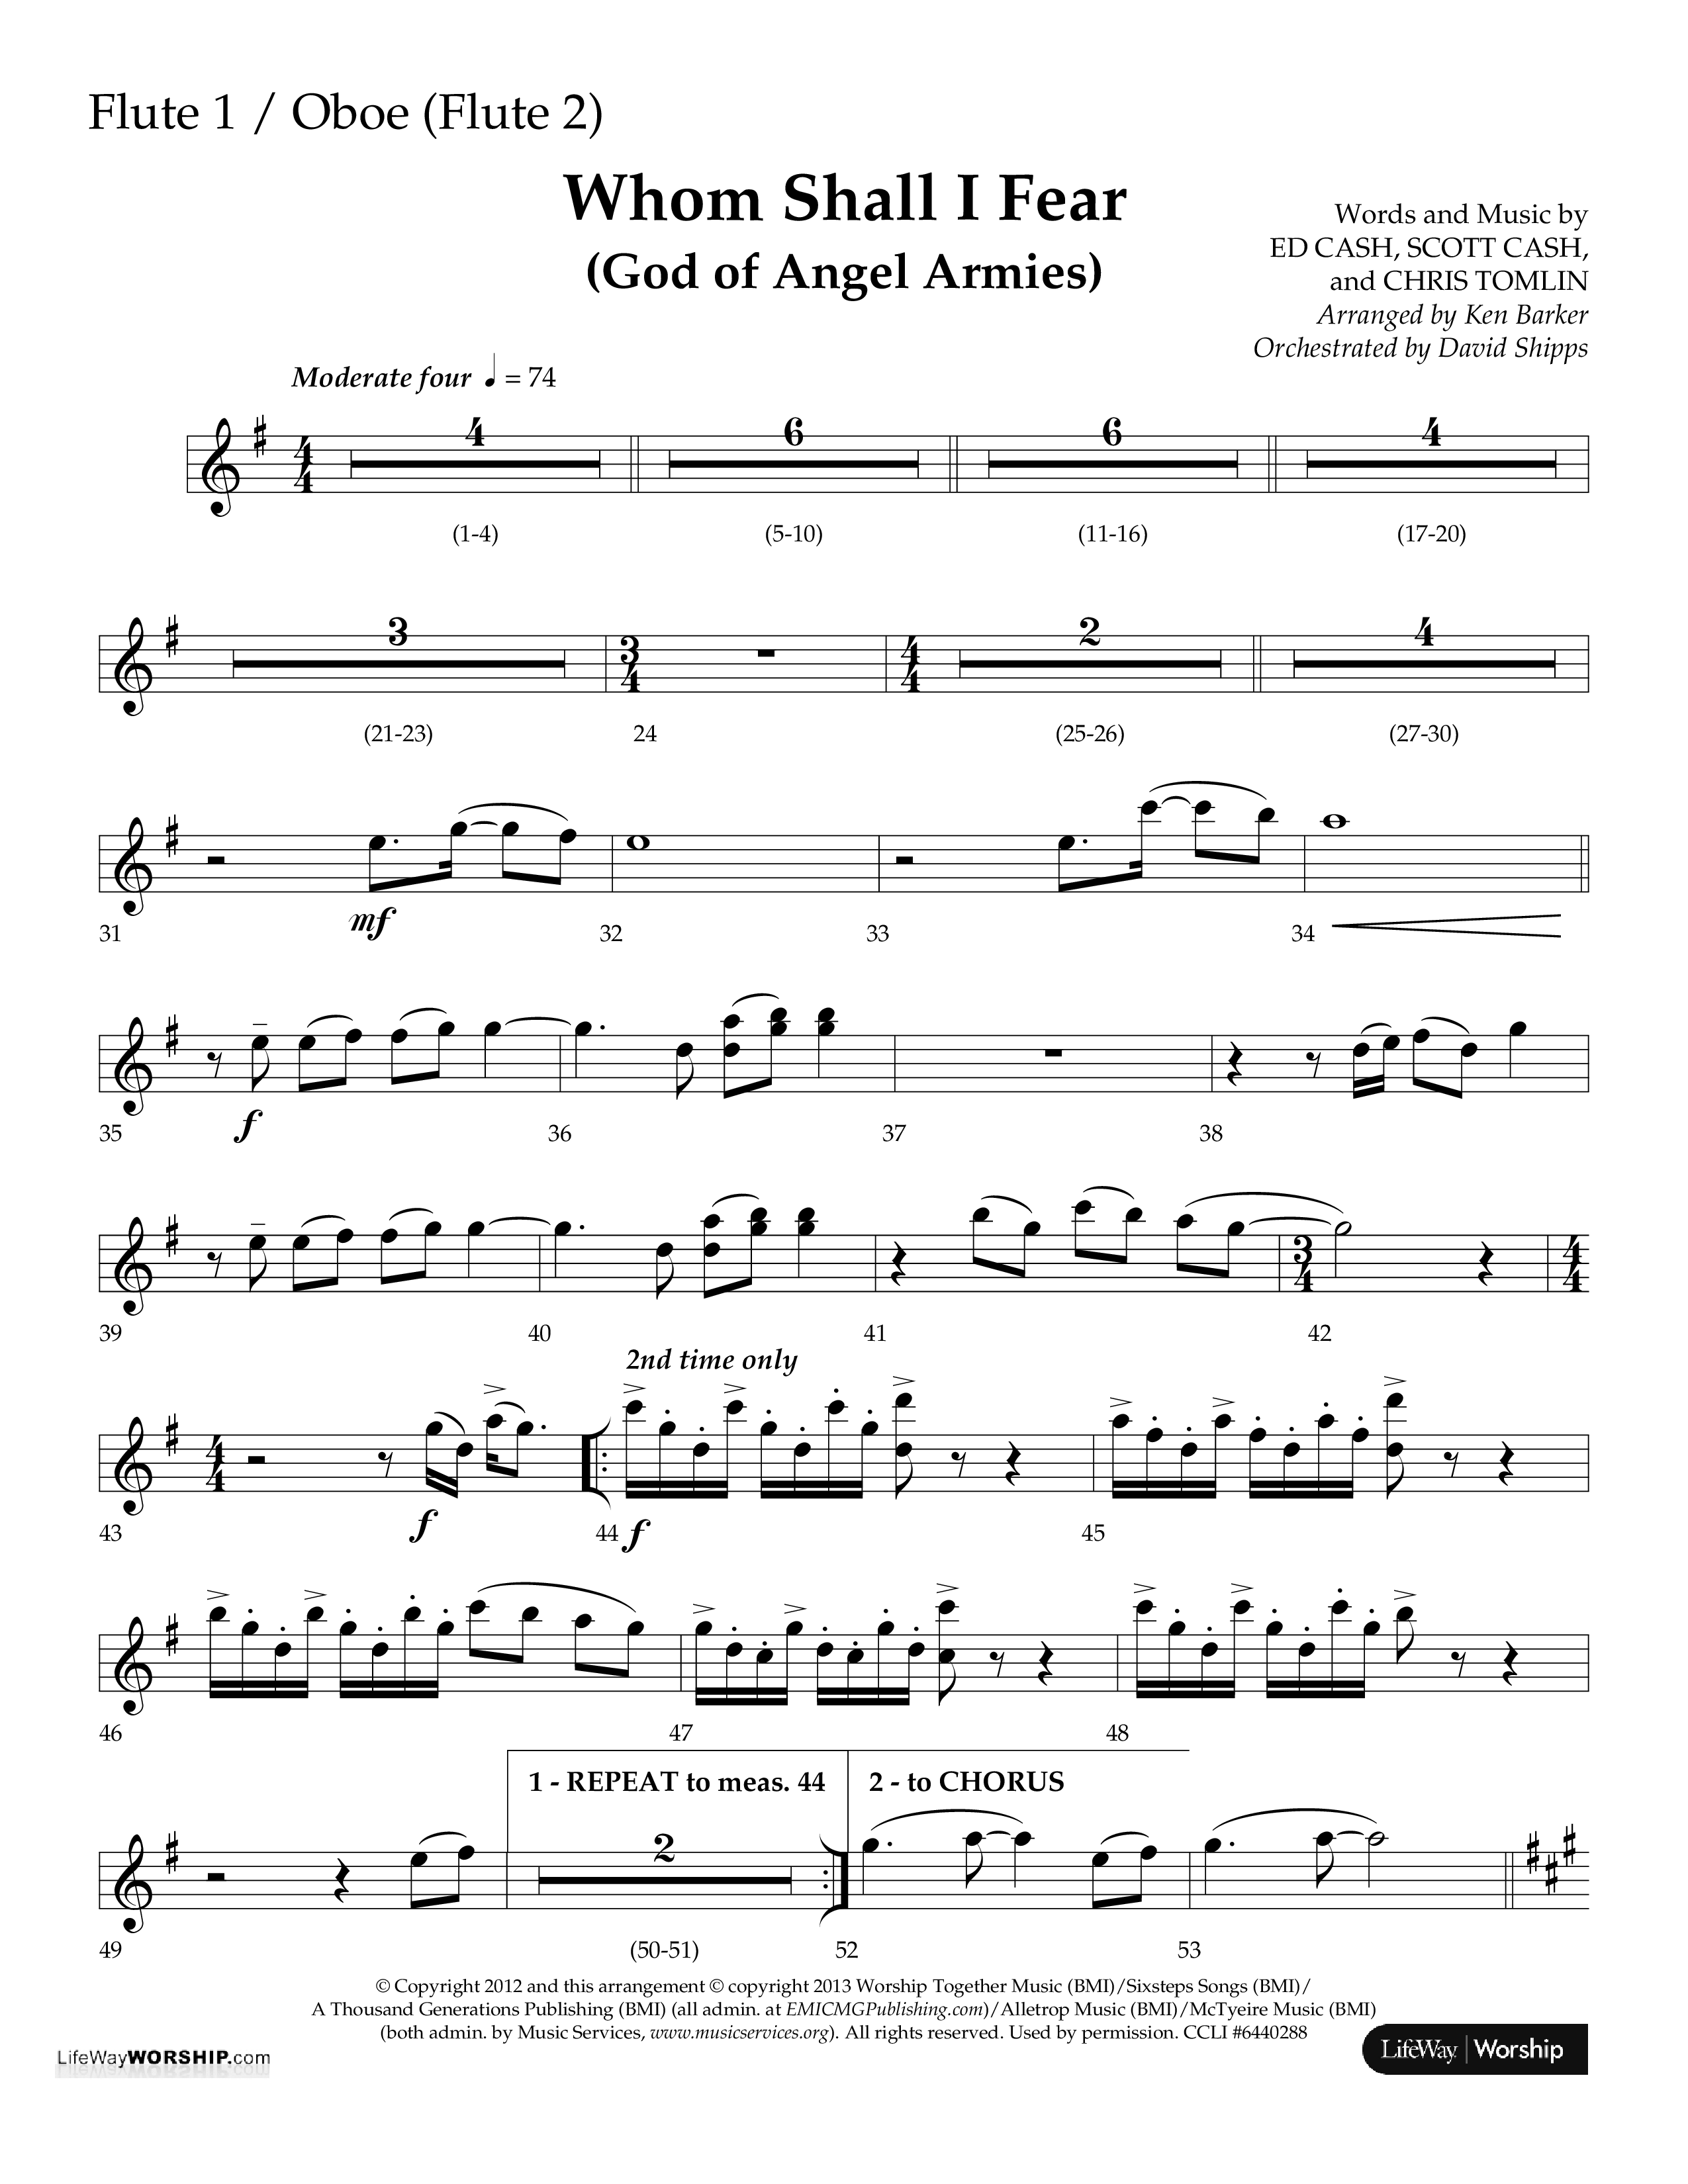 Whom Shall I Fear (God Of Angel Armies) (Choral Anthem SATB) Flute (Lifeway Choral / Arr. Ken Barker / Orch. David Shipps)